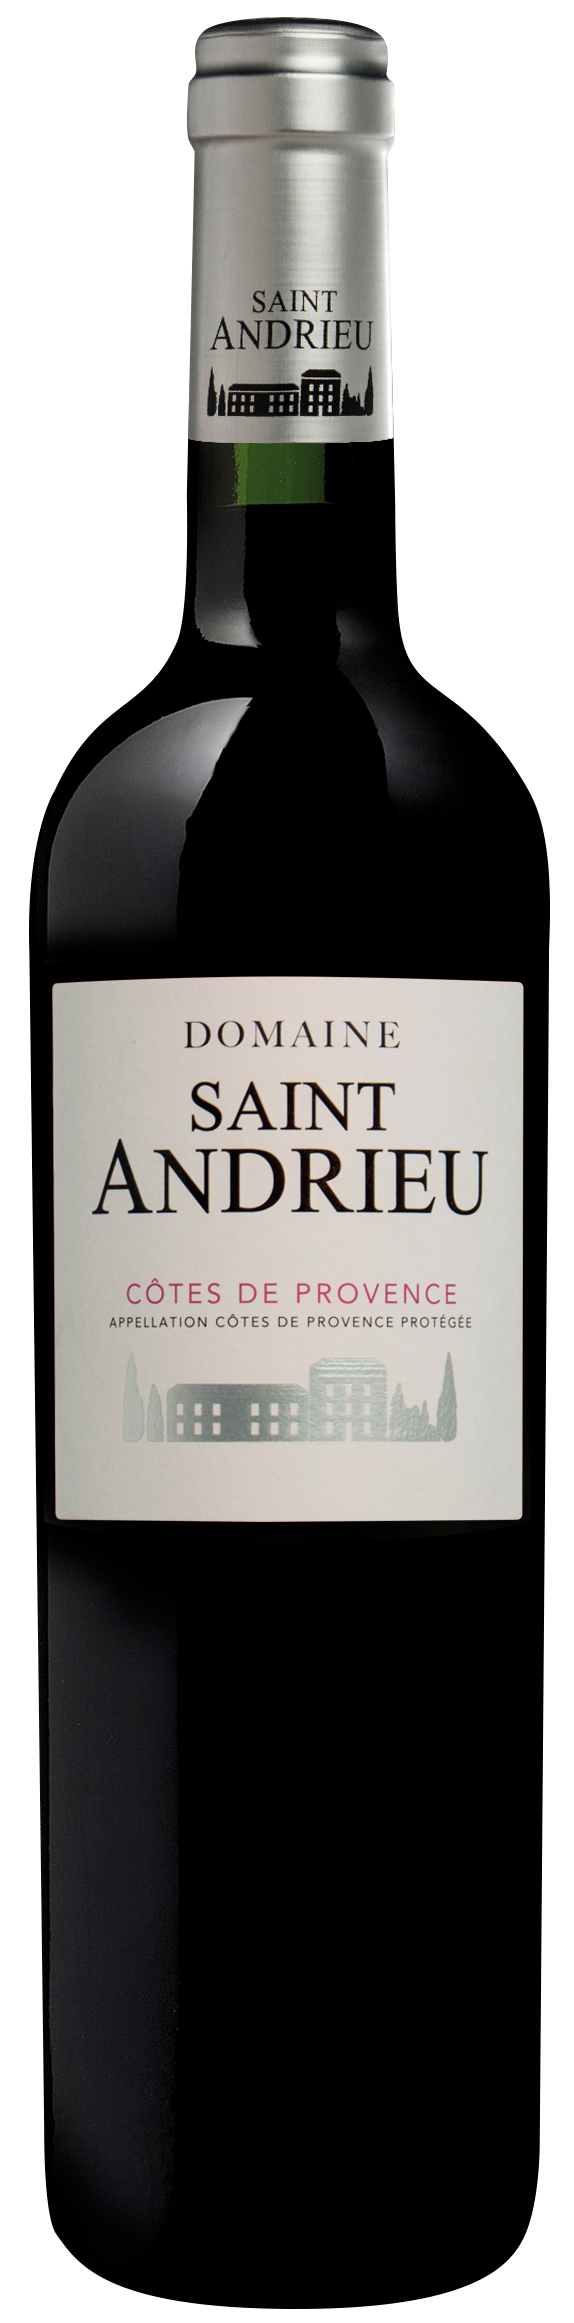 Domaine saint andrieu rouge 2015  Ctes de Provence, Provence